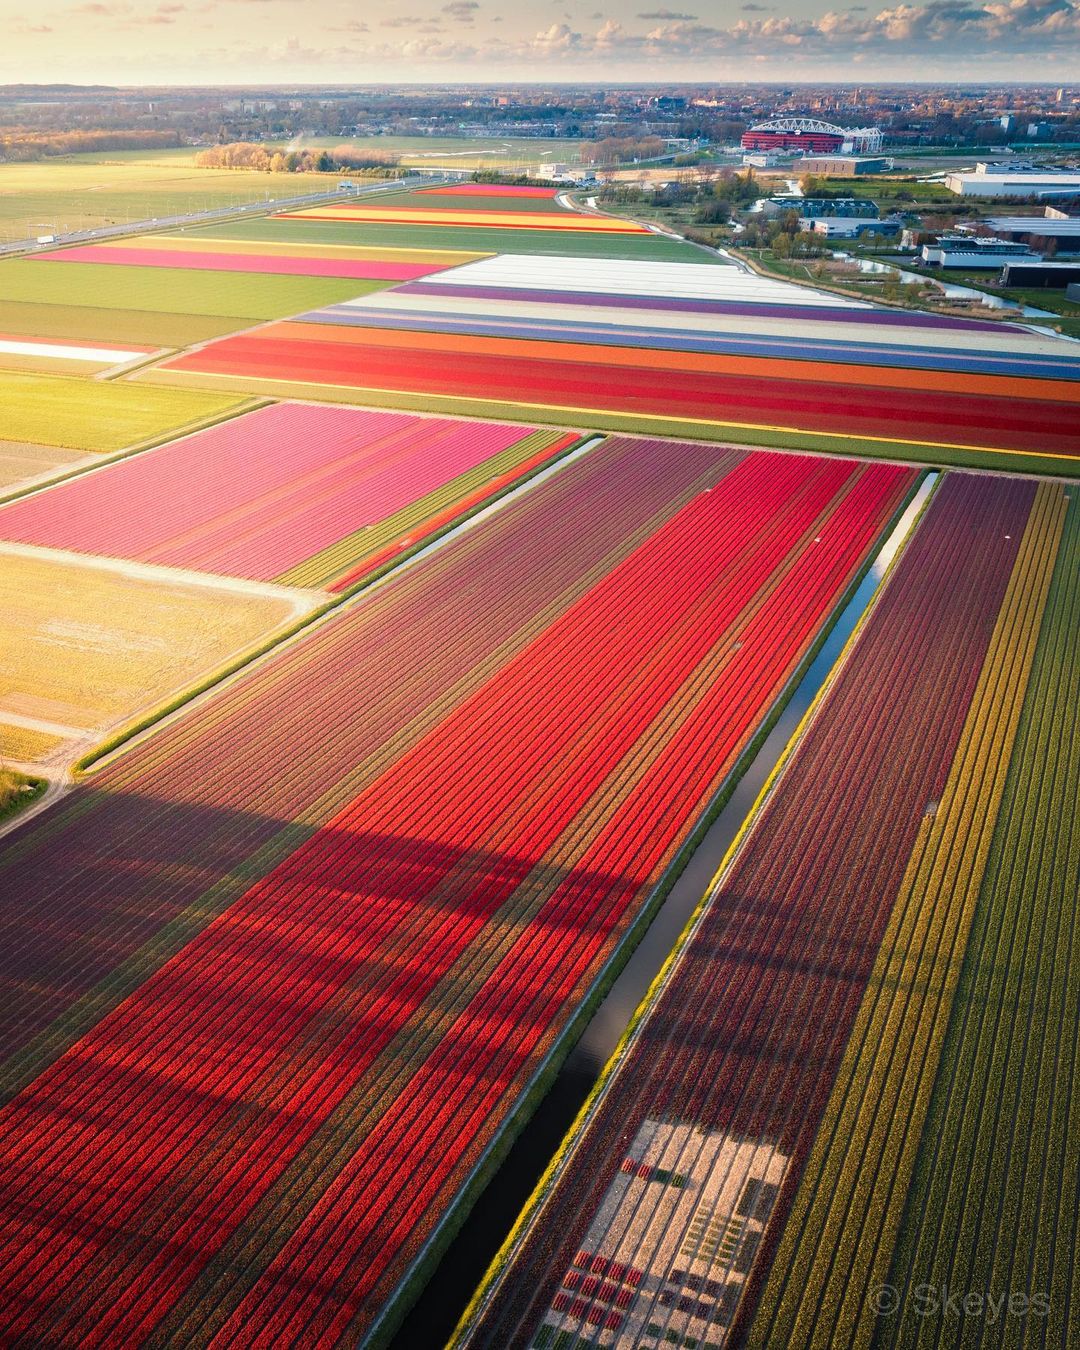 Cách tốt nhất để chiêm ngưỡng cánh đồng hoa tulip là ngắm toàn cảnh từ trực thăng. Ảnh: @nick_skeyes